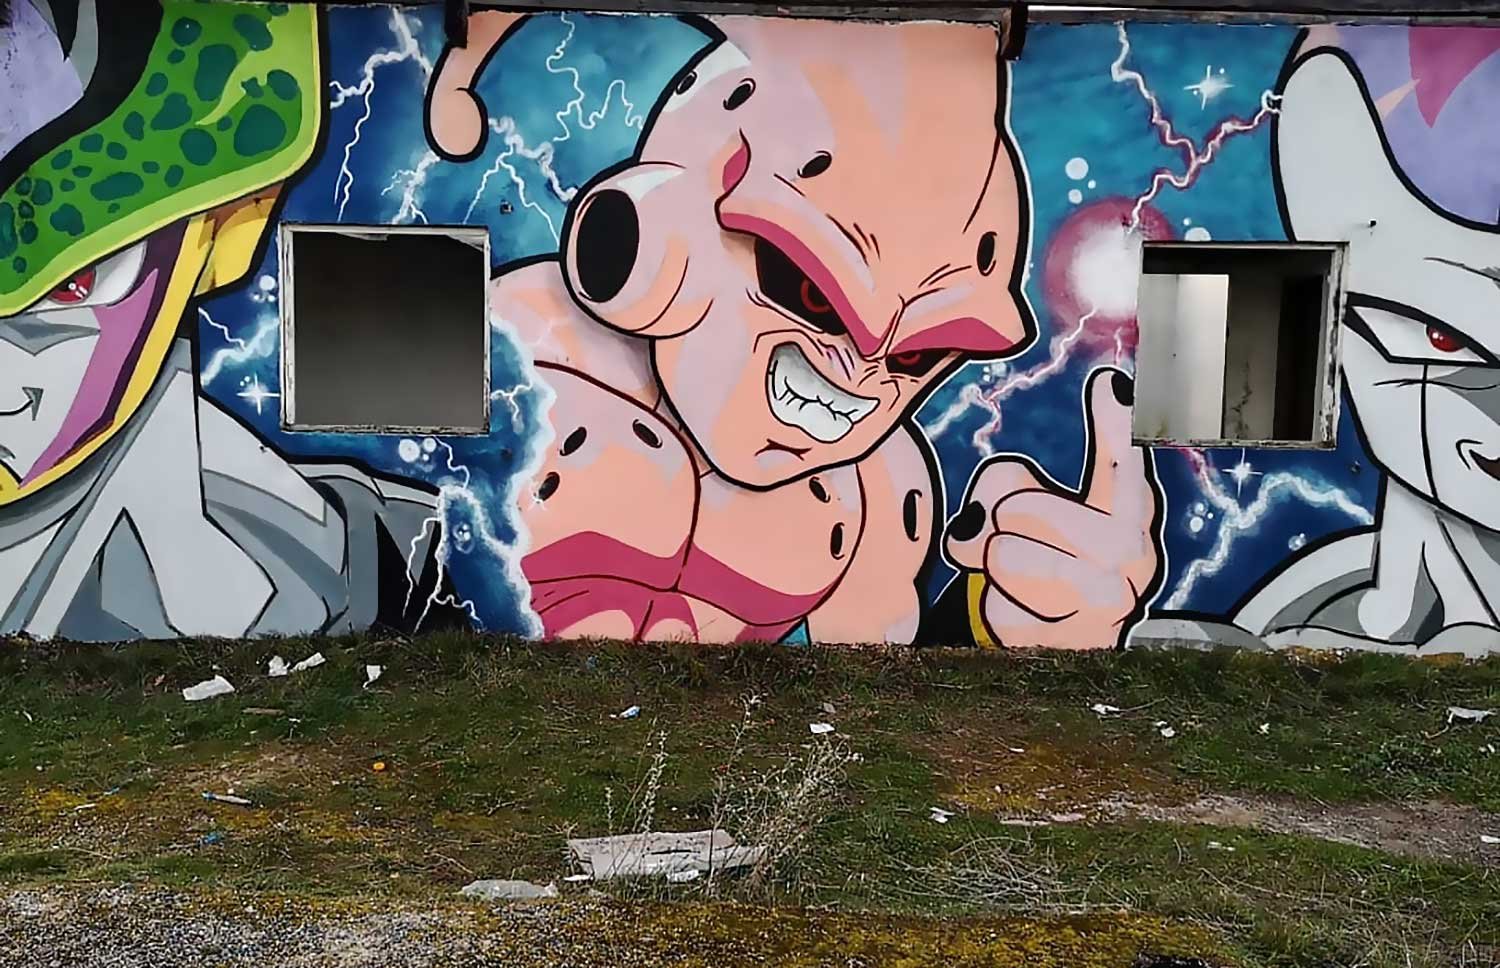 Les méchants de Dragon Ball Z reprennent vie dans cet incroyable street art